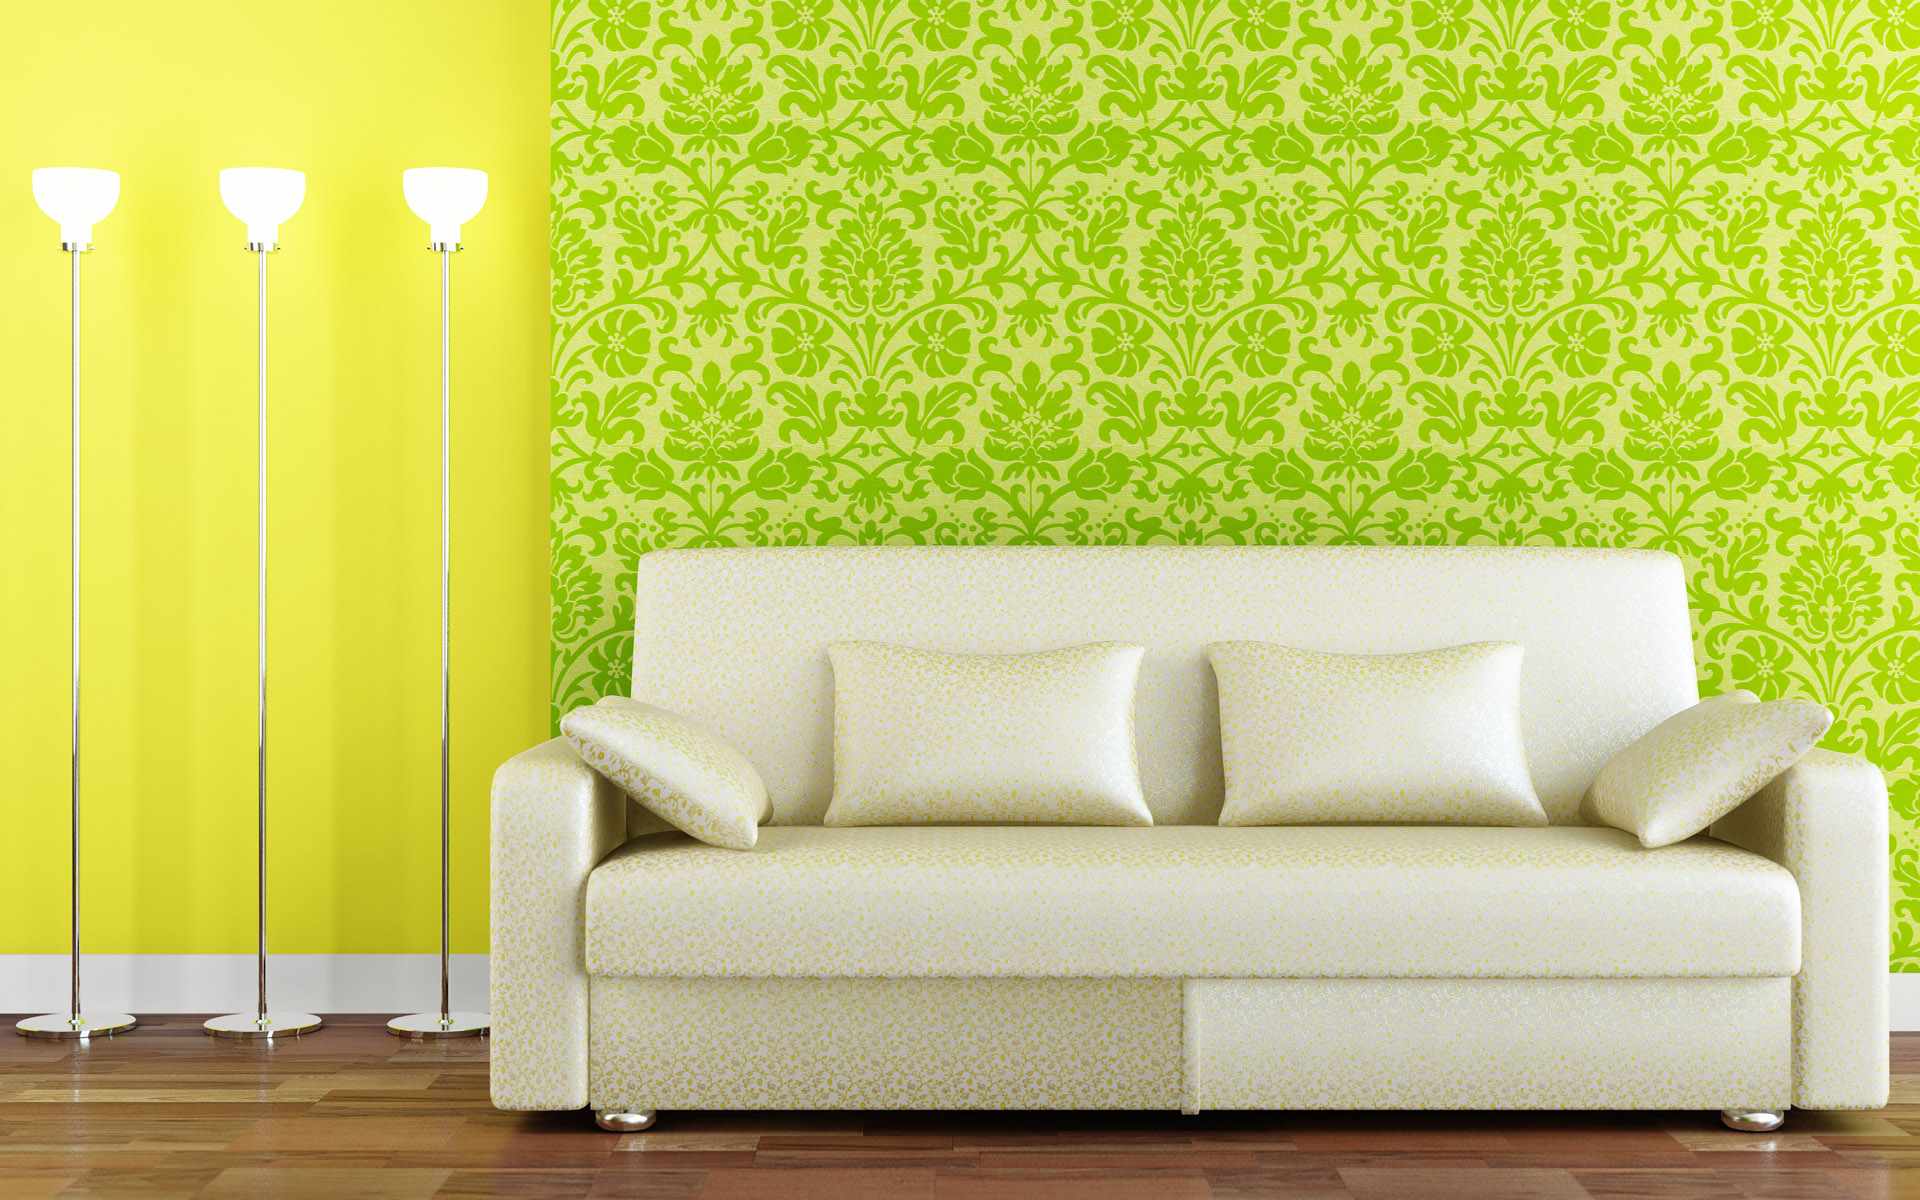 Modern Living Room Wallpaper Design Ideas / FresHOUZ.com